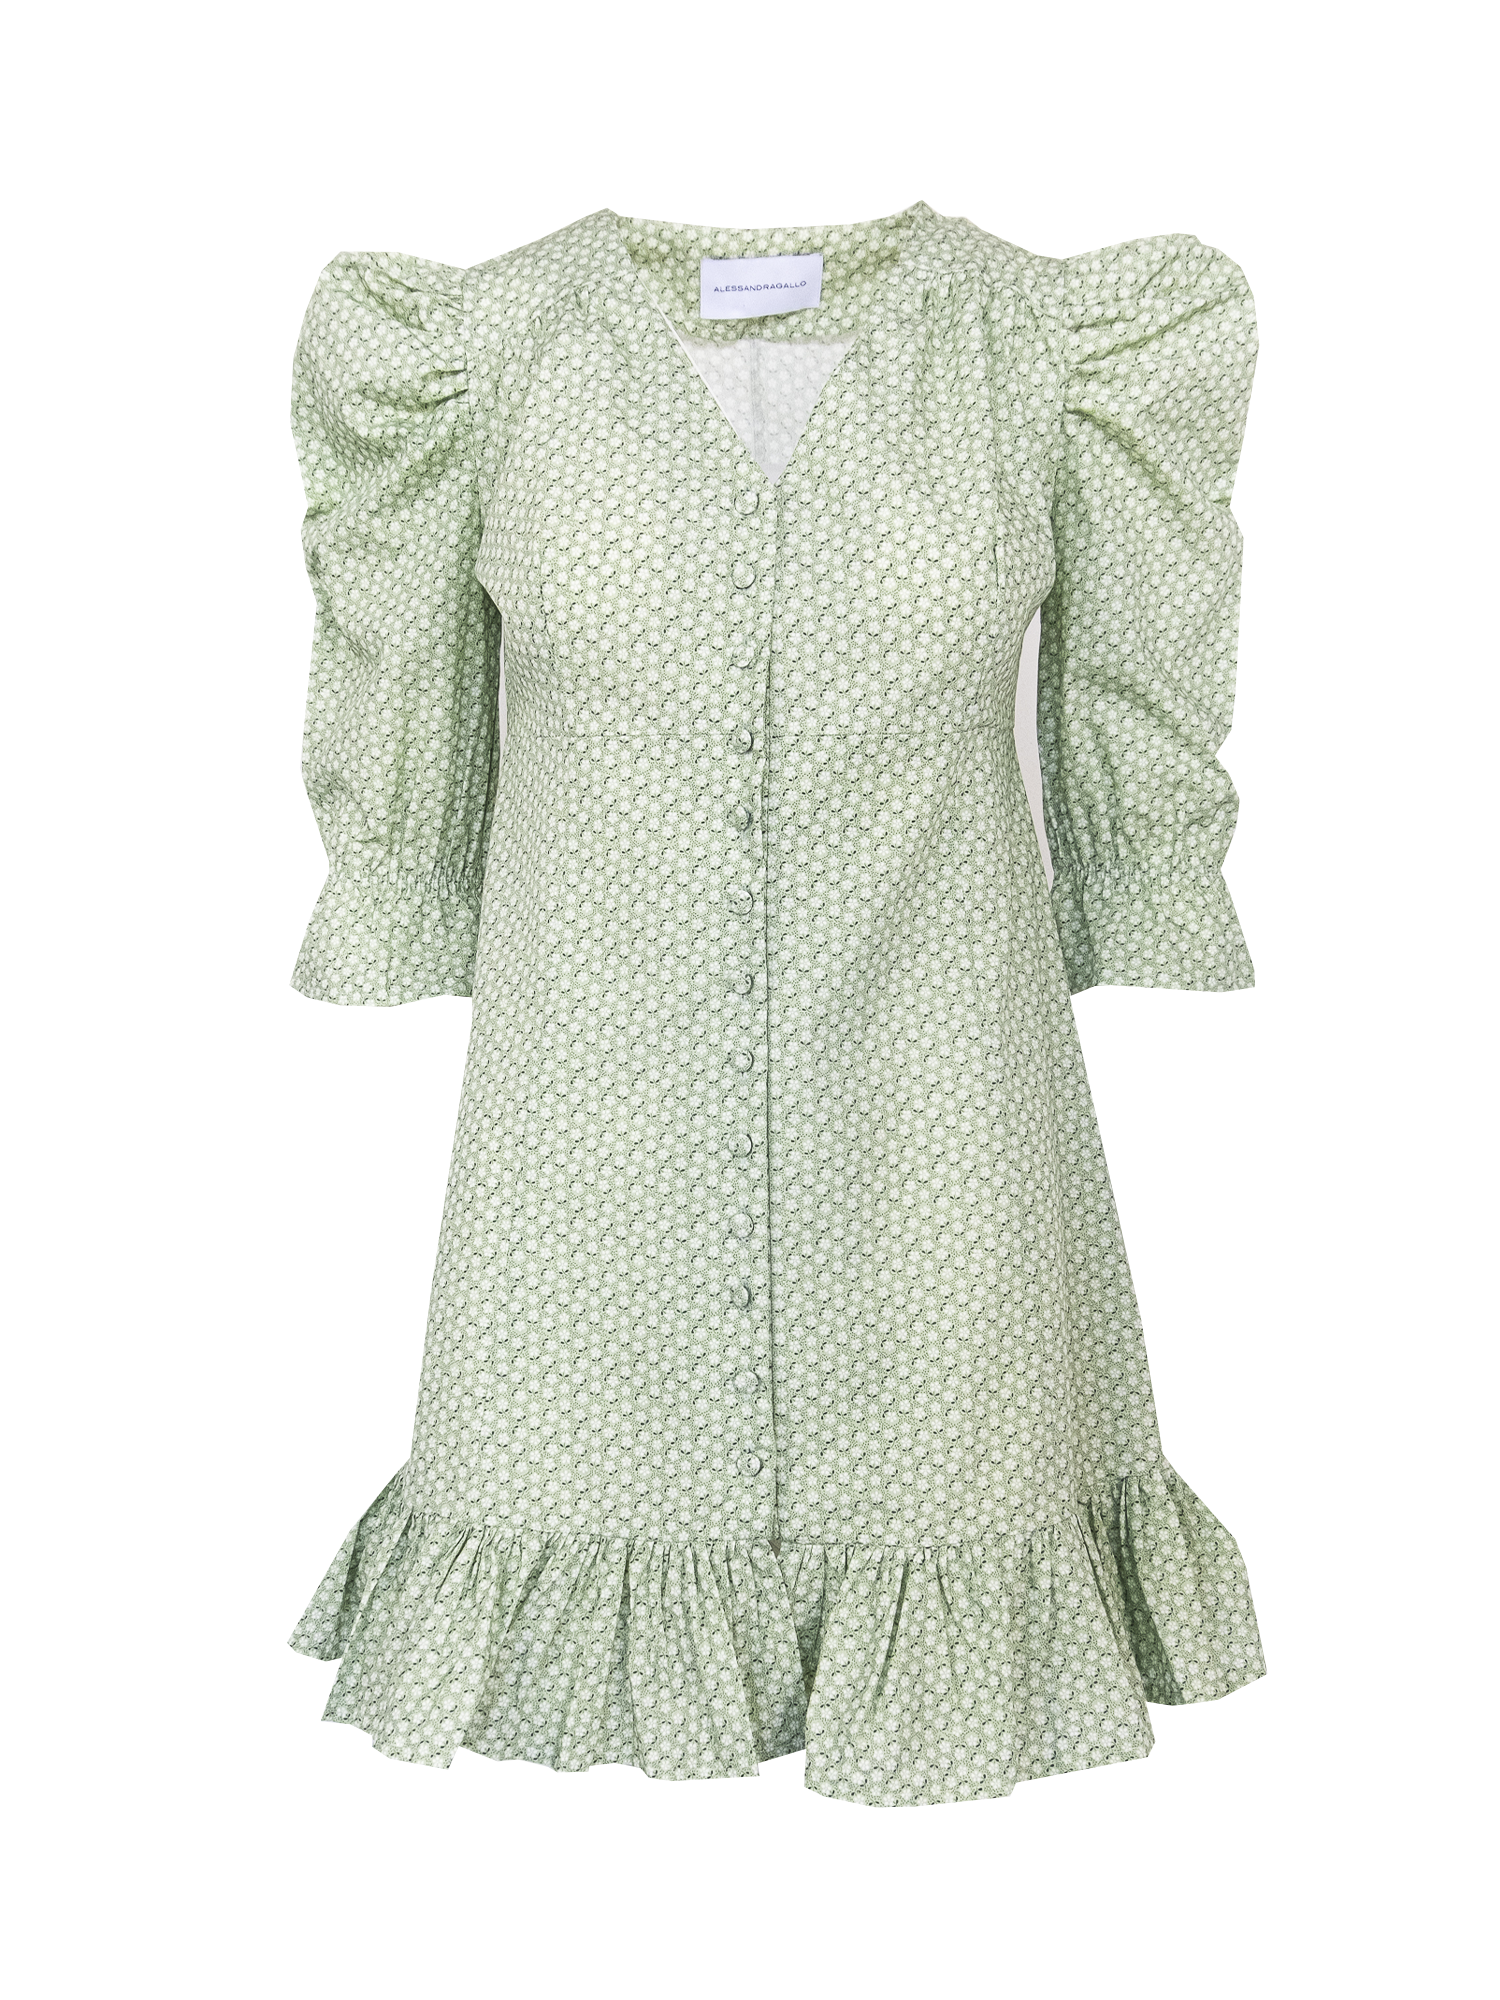 DALIA - Short cotton dress with Villa d'Este pattern